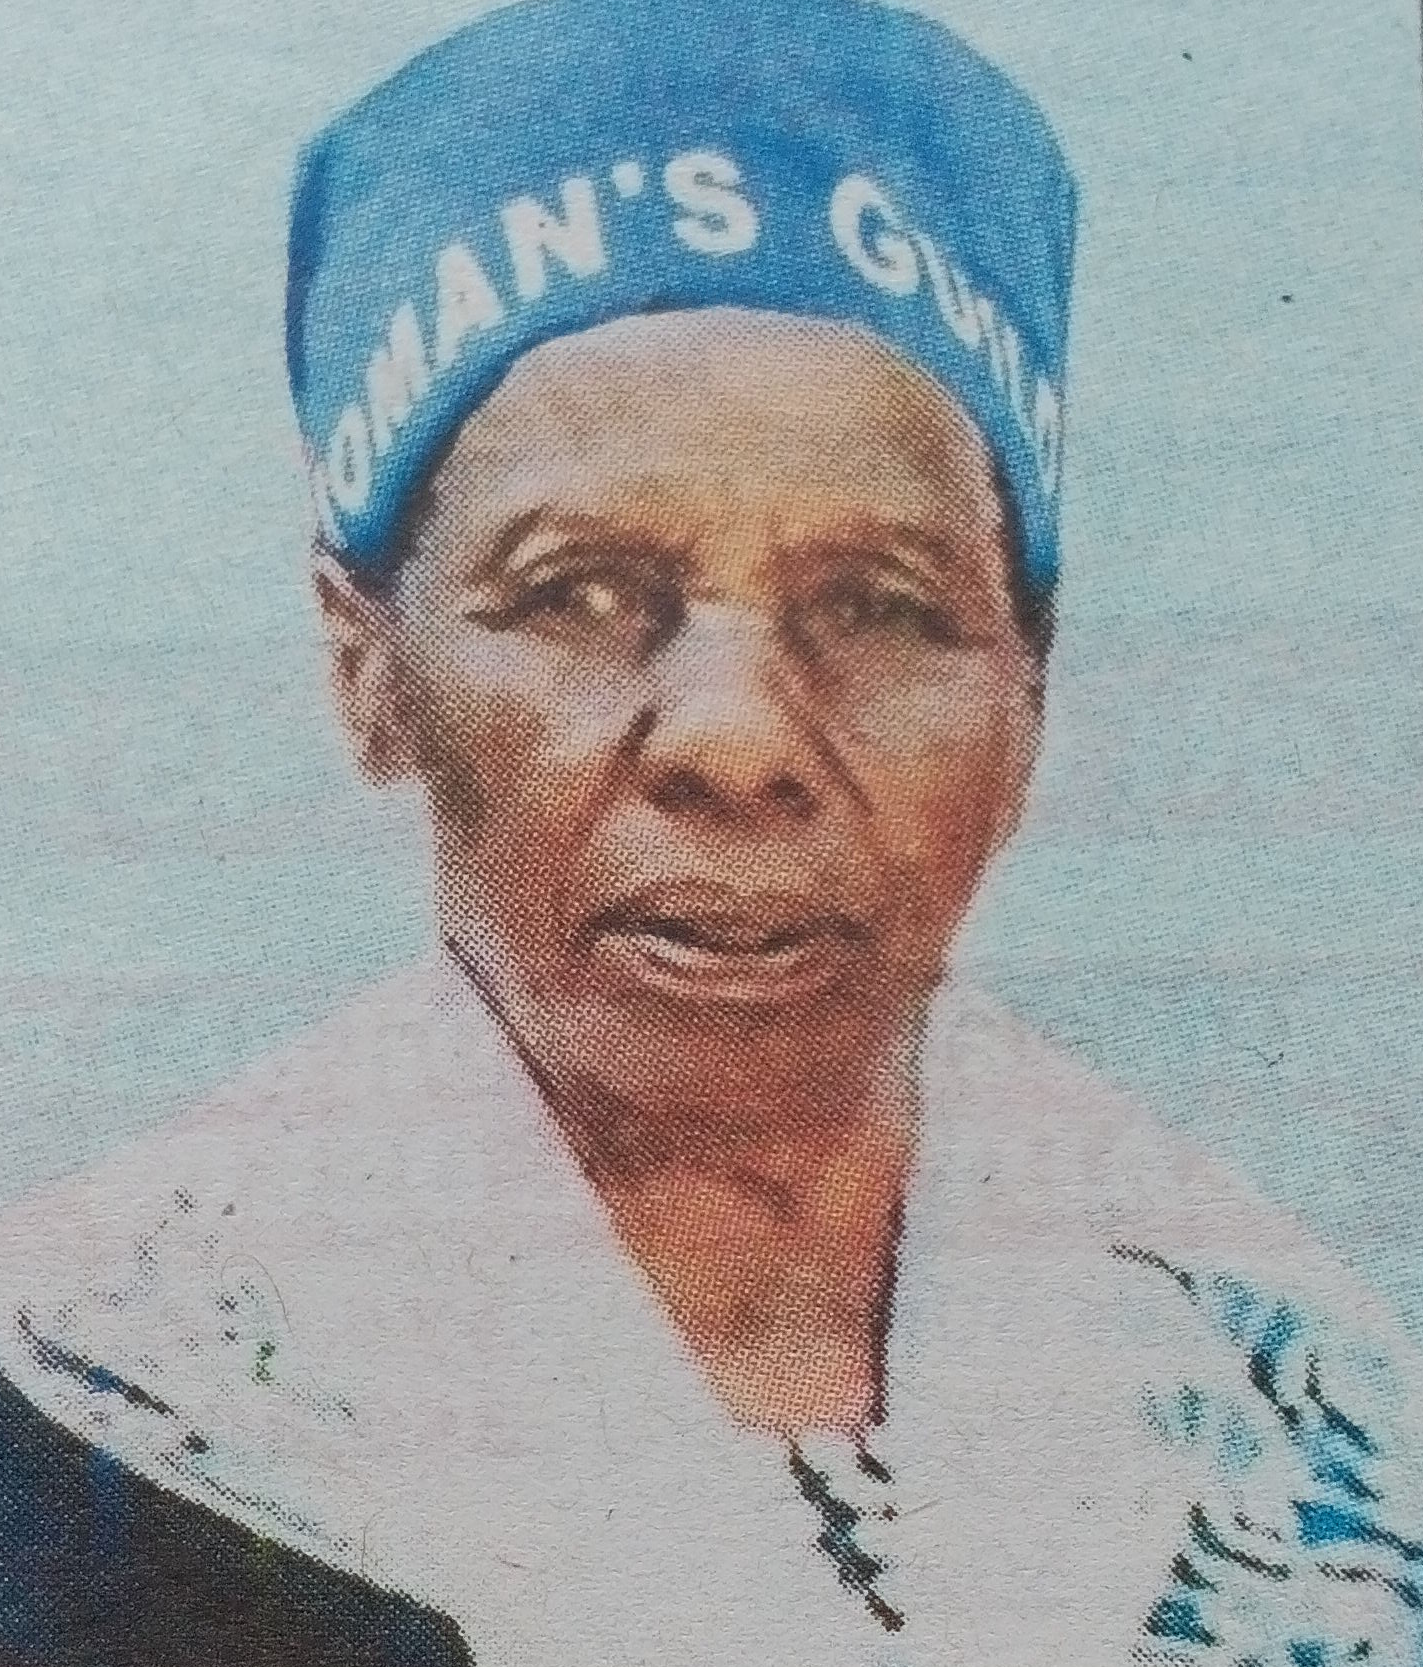 Obituary Image of Elder (Rtd) Miriam Muthoni Njuguna